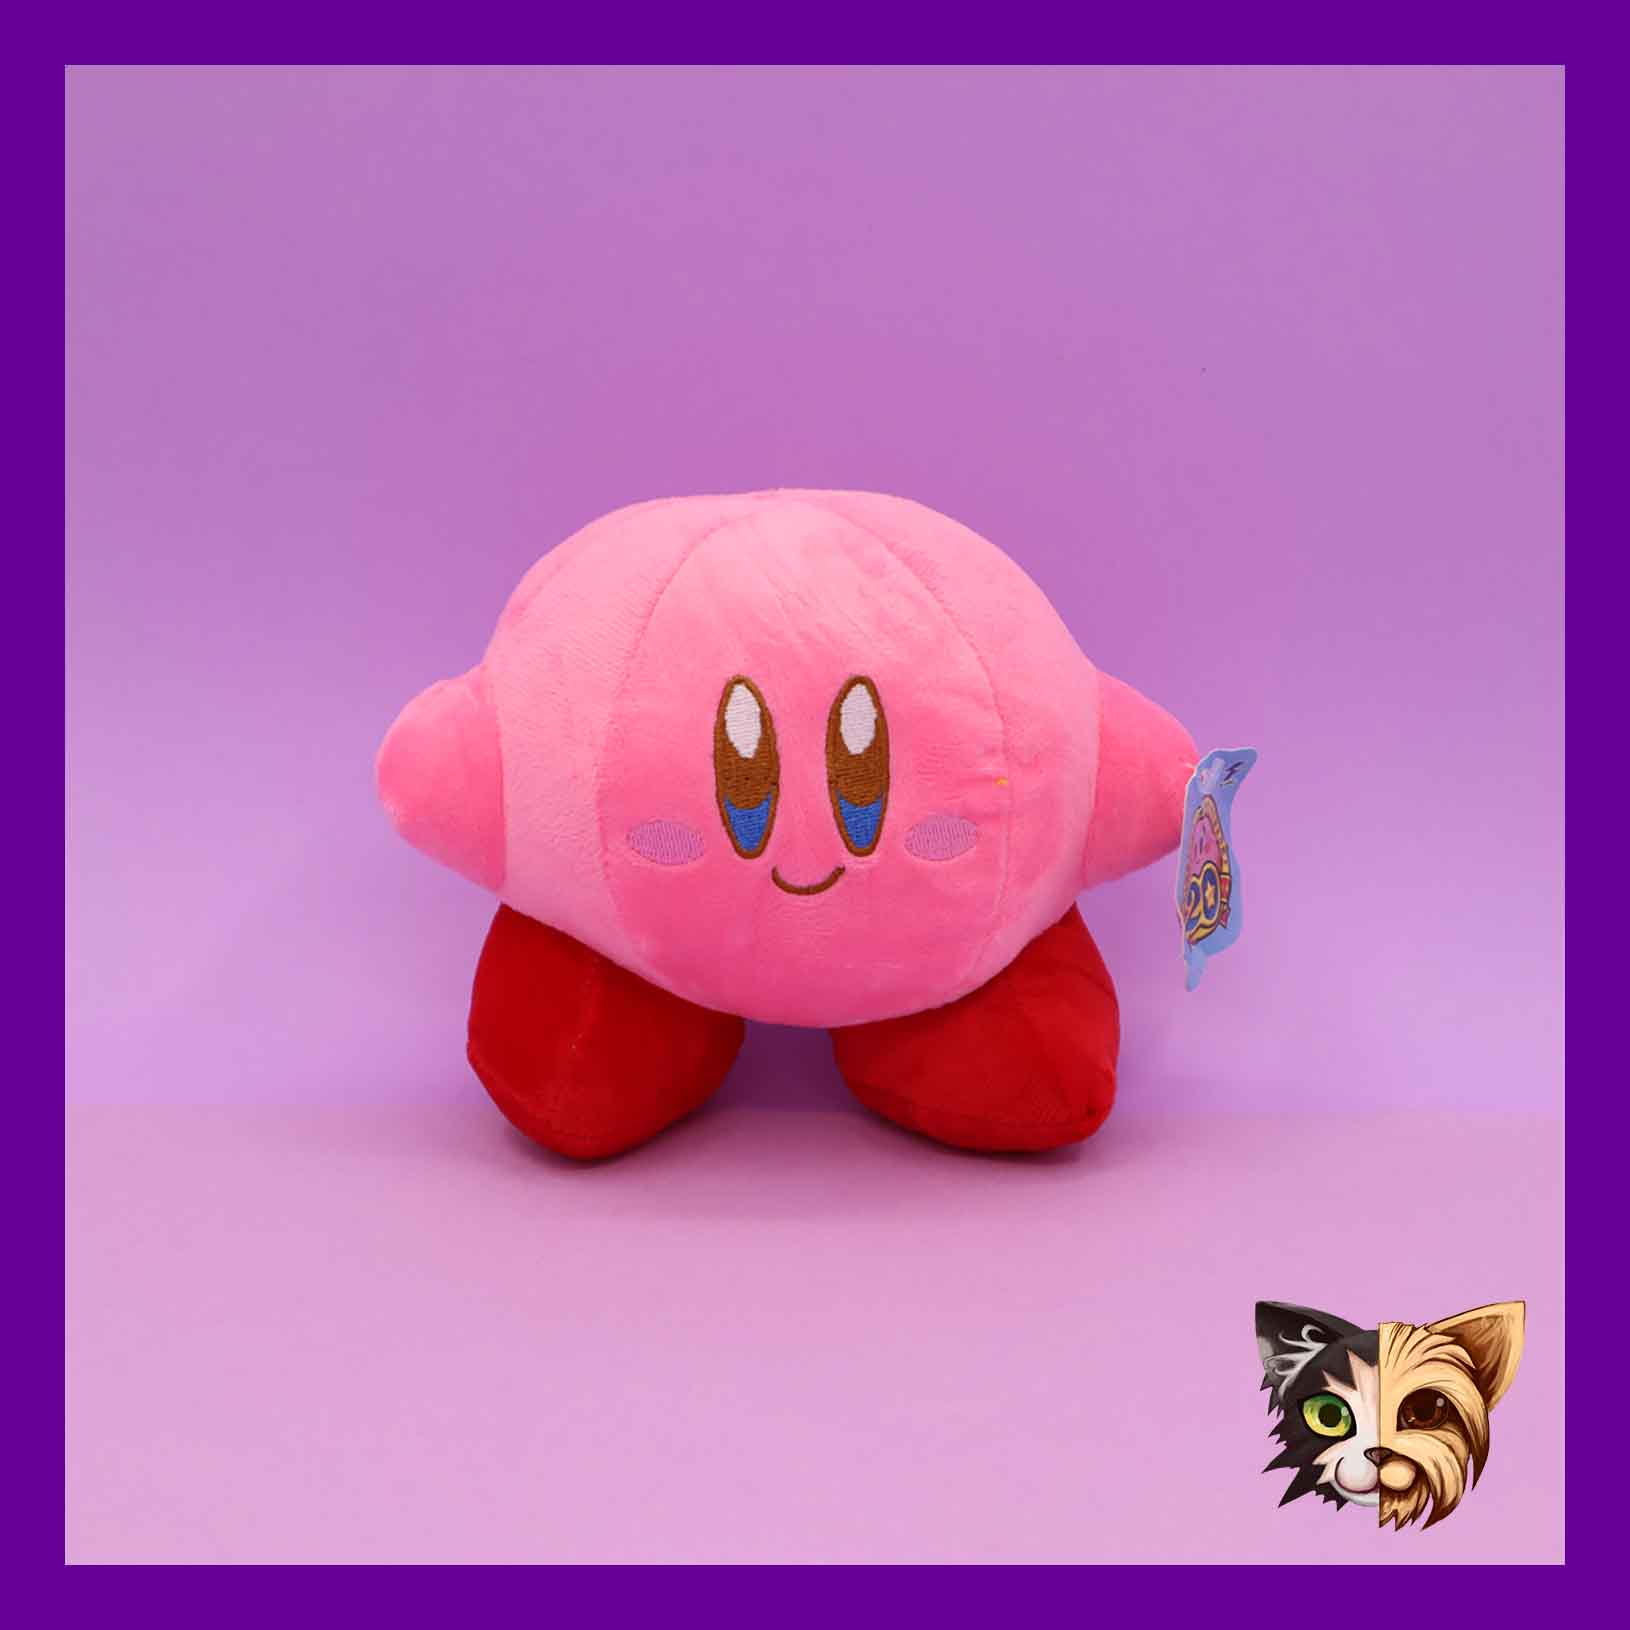 Ya puedes comprar los adorables peluches de Kirby Transformosis